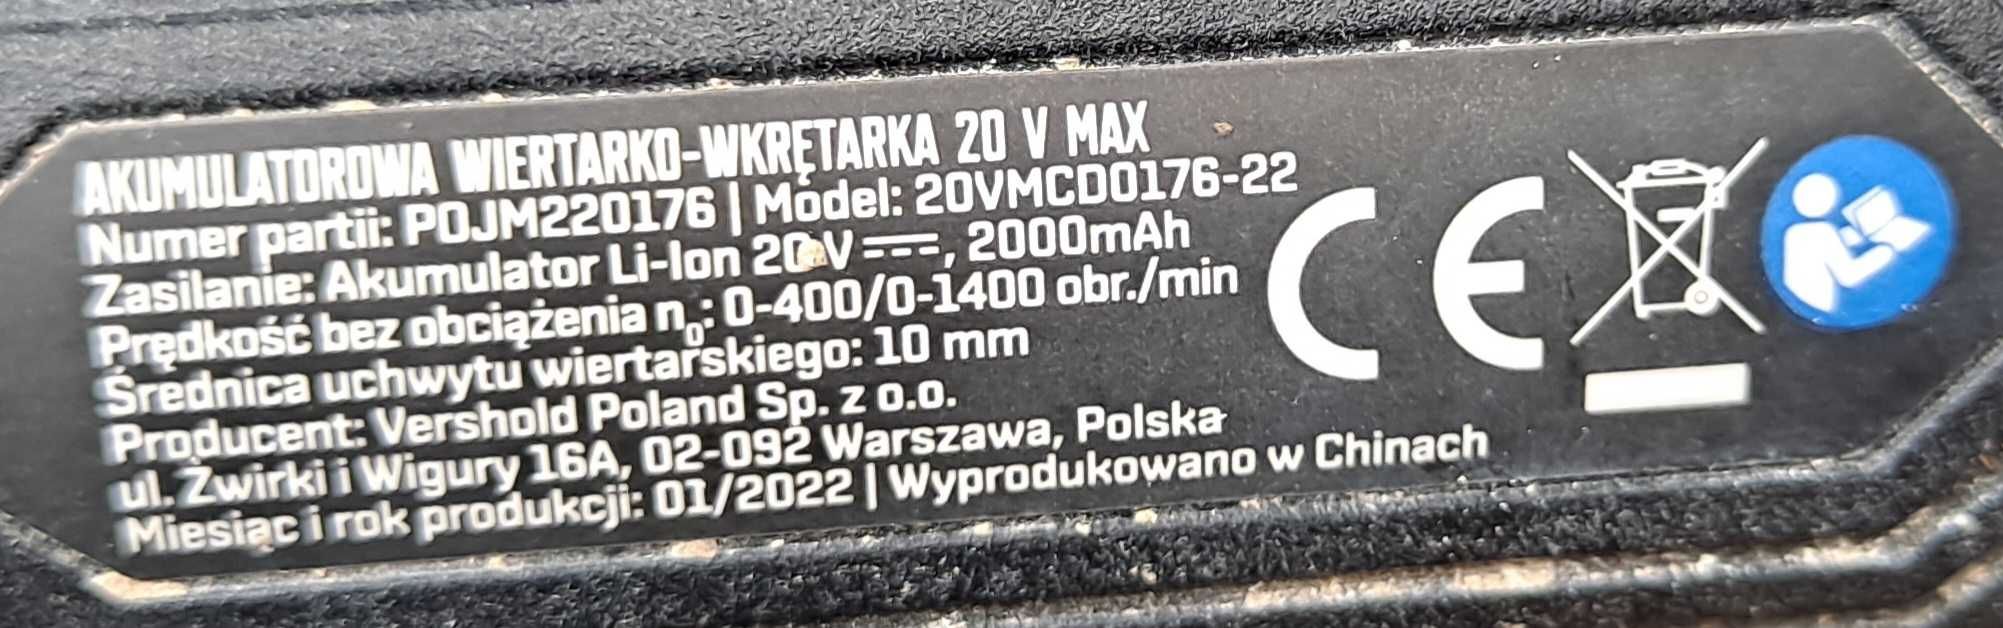 Akumulatorowa Wiertarko-Wkrętarka Niteo 20V Max